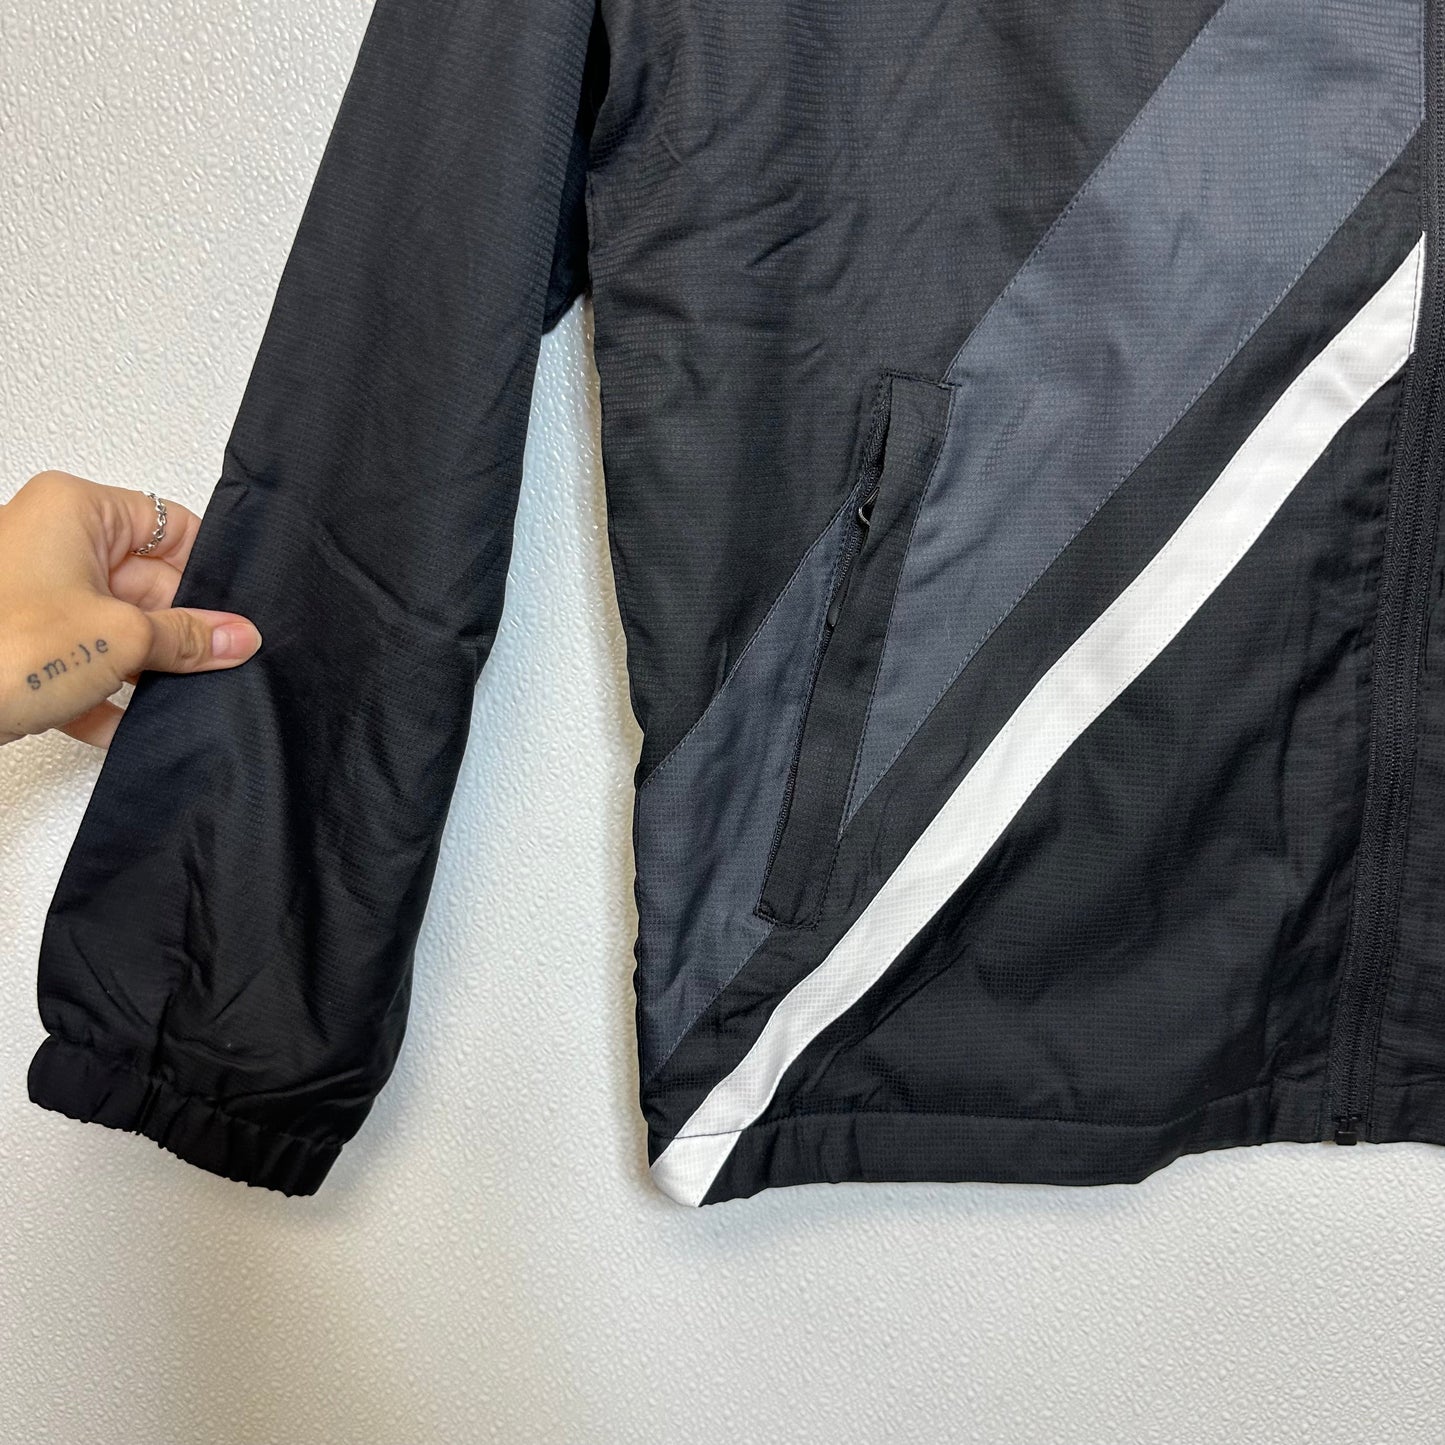 Jacket Windbreaker By Reebok  Size: S